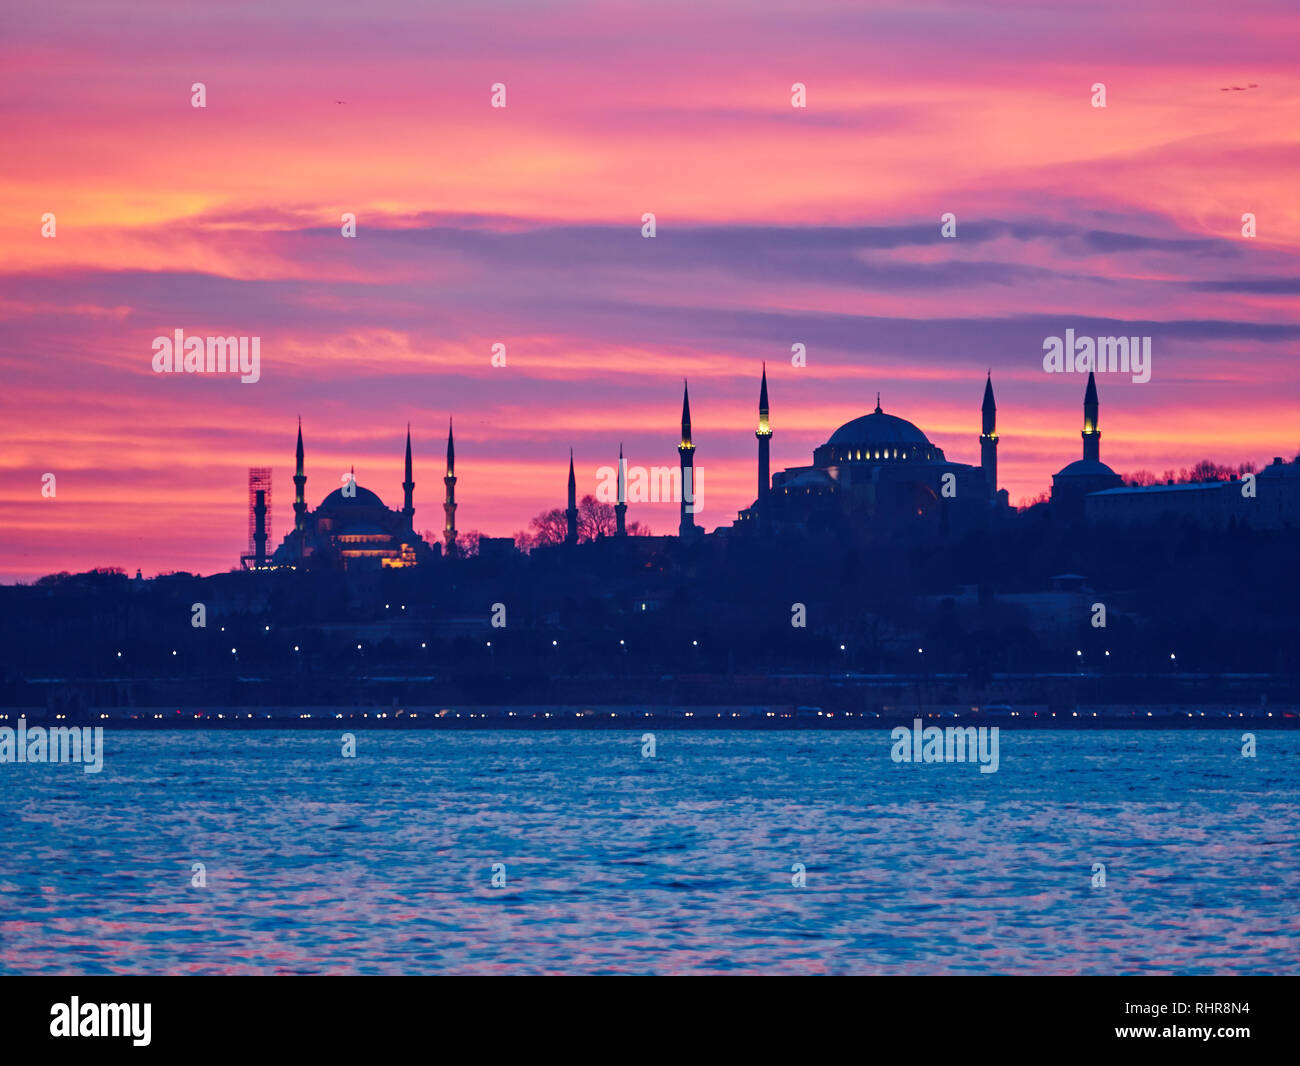 Monumentos de Estambul al atardecer: Hagia Sophia y la Mezquita Azul Foto de stock